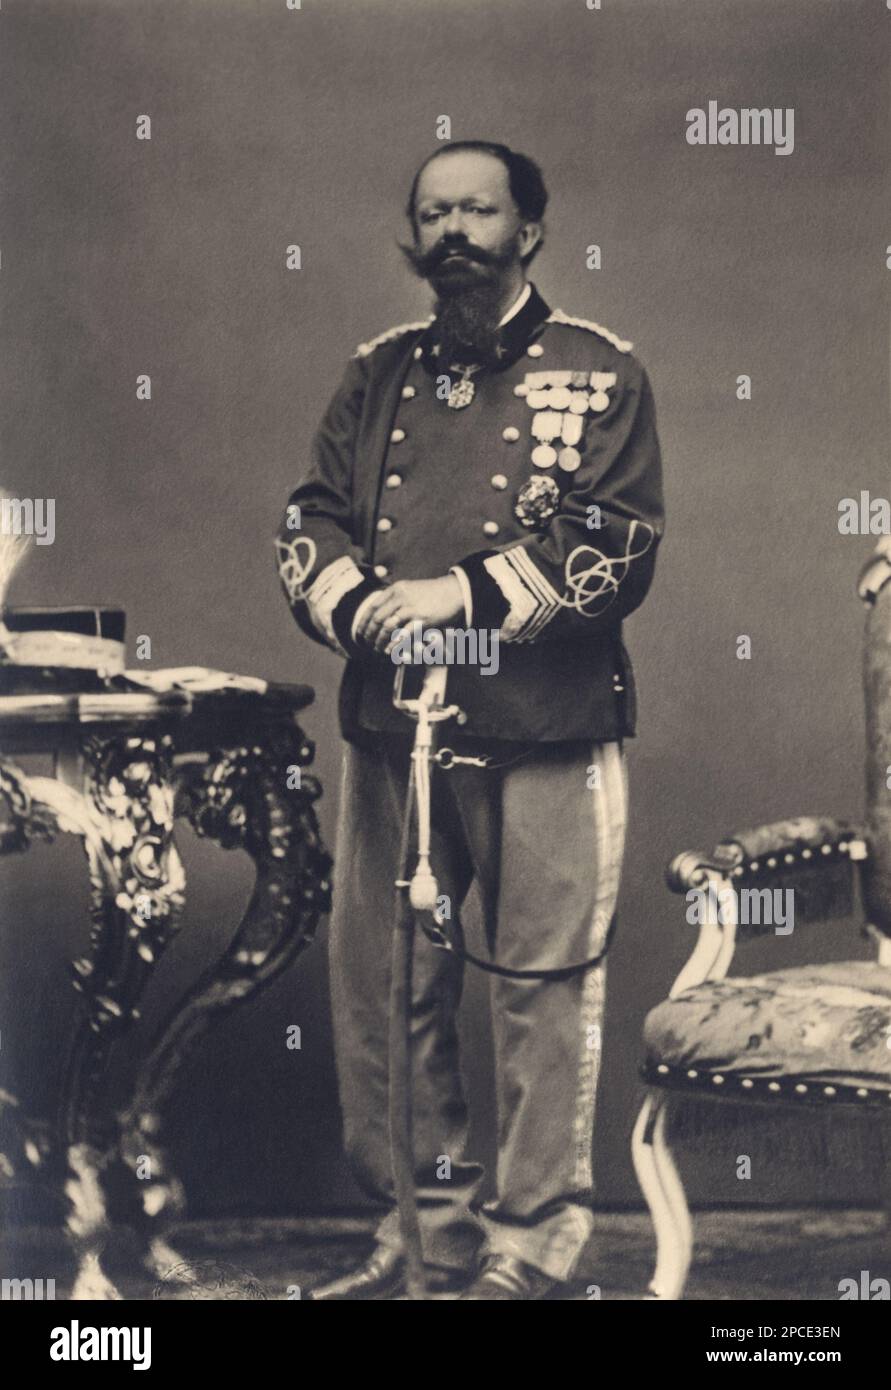 1870 ca, ITALIA : il Re italiano VITTORIO EMANUELE II di SAVOIA ( 1820 - 1888 ). - ITALIA - CASA SAVOIA - REALI - Nobiltà ITALIANA - SAVOIA - NOBILTÀ - ROYALTY - STORIA - FOTO STORICHE - royalty - nobili - Nobiltà - ritratto - ritratto - baffi - baffi - barba - barba - barba - barba - divisa militare - divisa uniforme militare - medaglie - medaglie - spada - spada ---- Archivio GBB Foto Stock